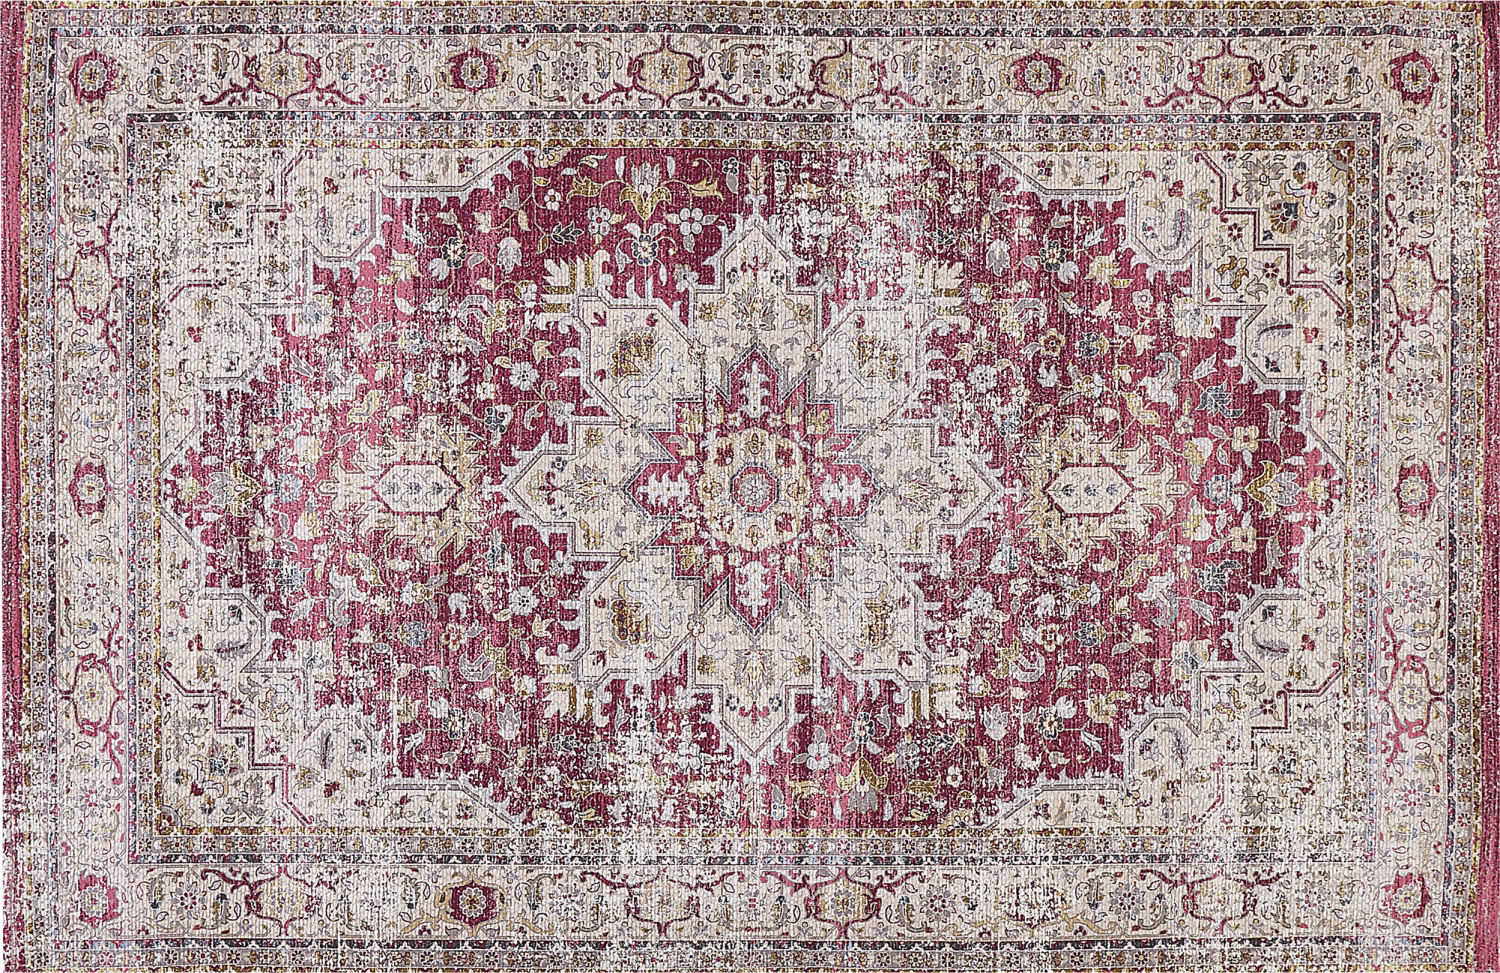 Teppich mehrfarbig orientalisches Muster 140 x 200 cm Kurzflor ARHAVI Bild 1